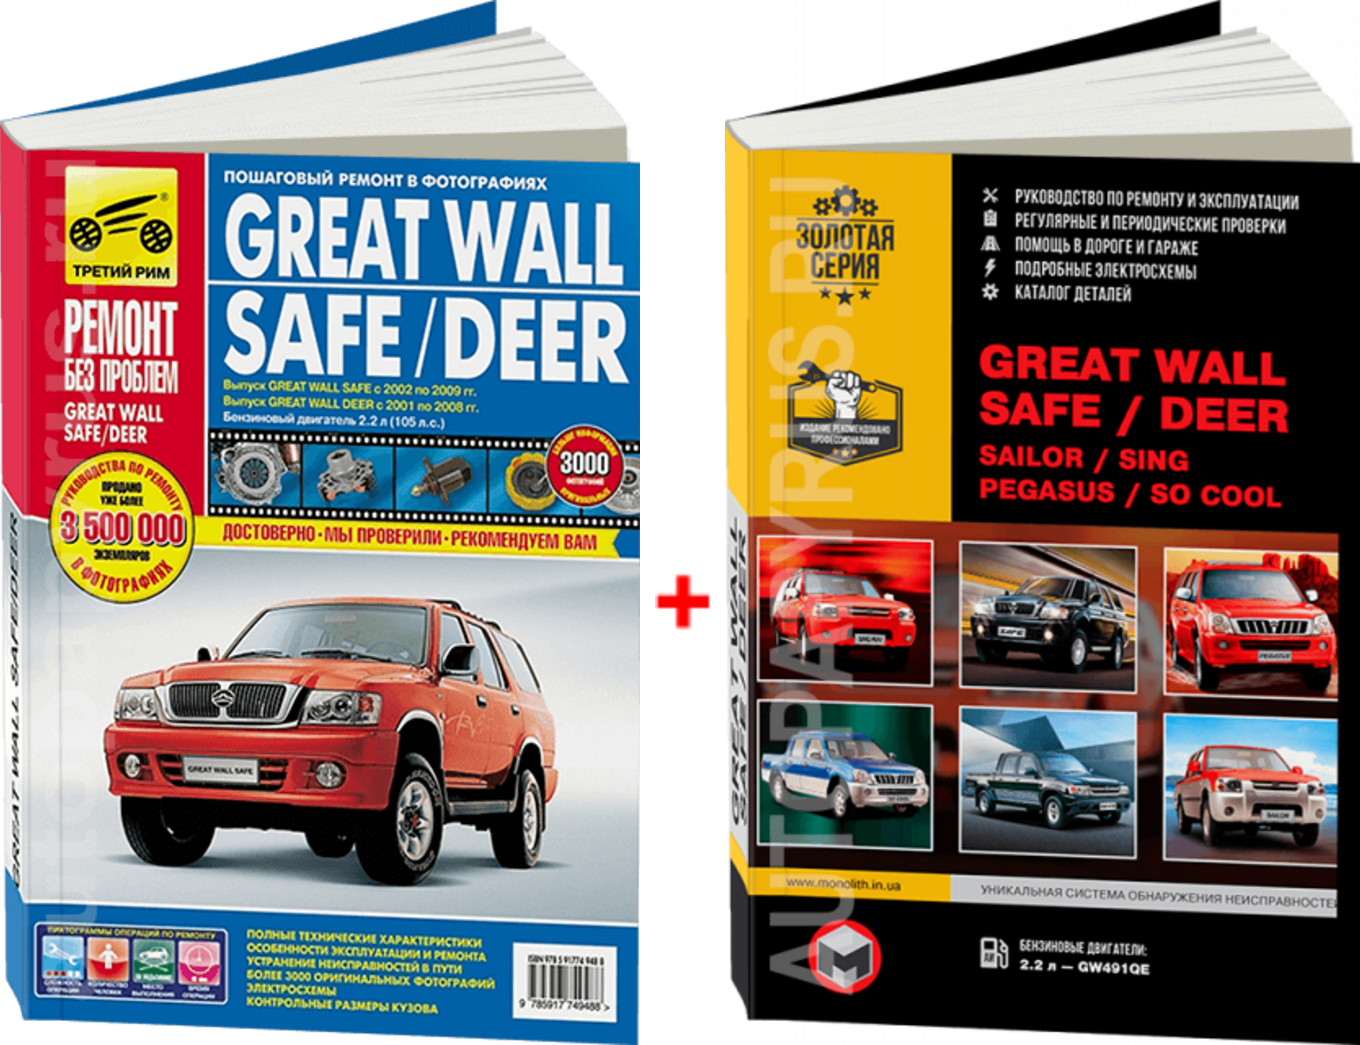 Комплект литературы по ремонту и обслуживанию Great Wall Safe / Deer